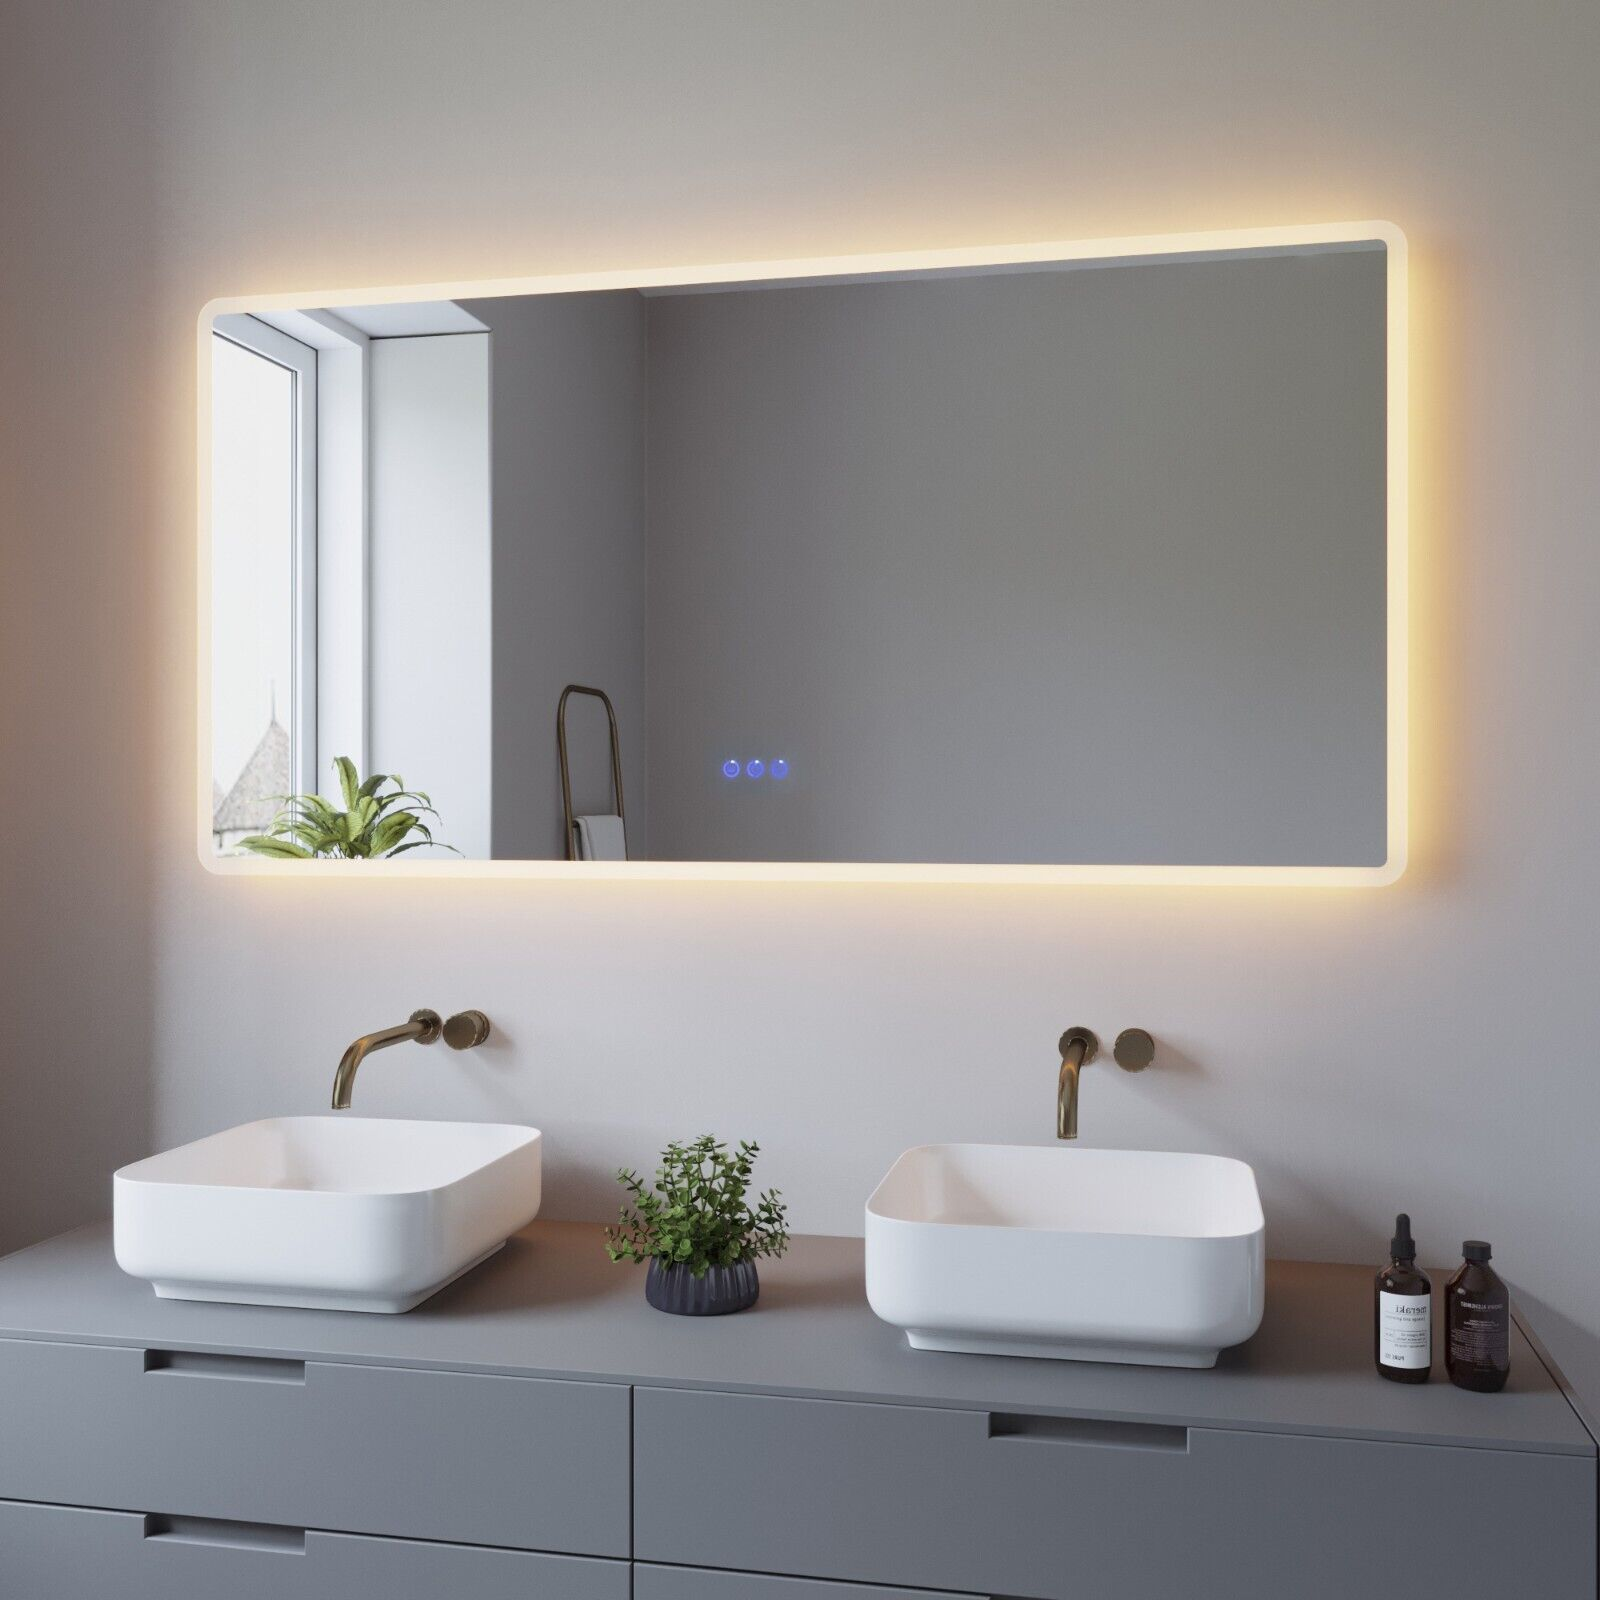 AQUABATOS LED Badspiegel Warmweiß Touch 6400K Beschlagfrei Badezimmerspiegel 3000K Wandspiegel Kaltweiß 